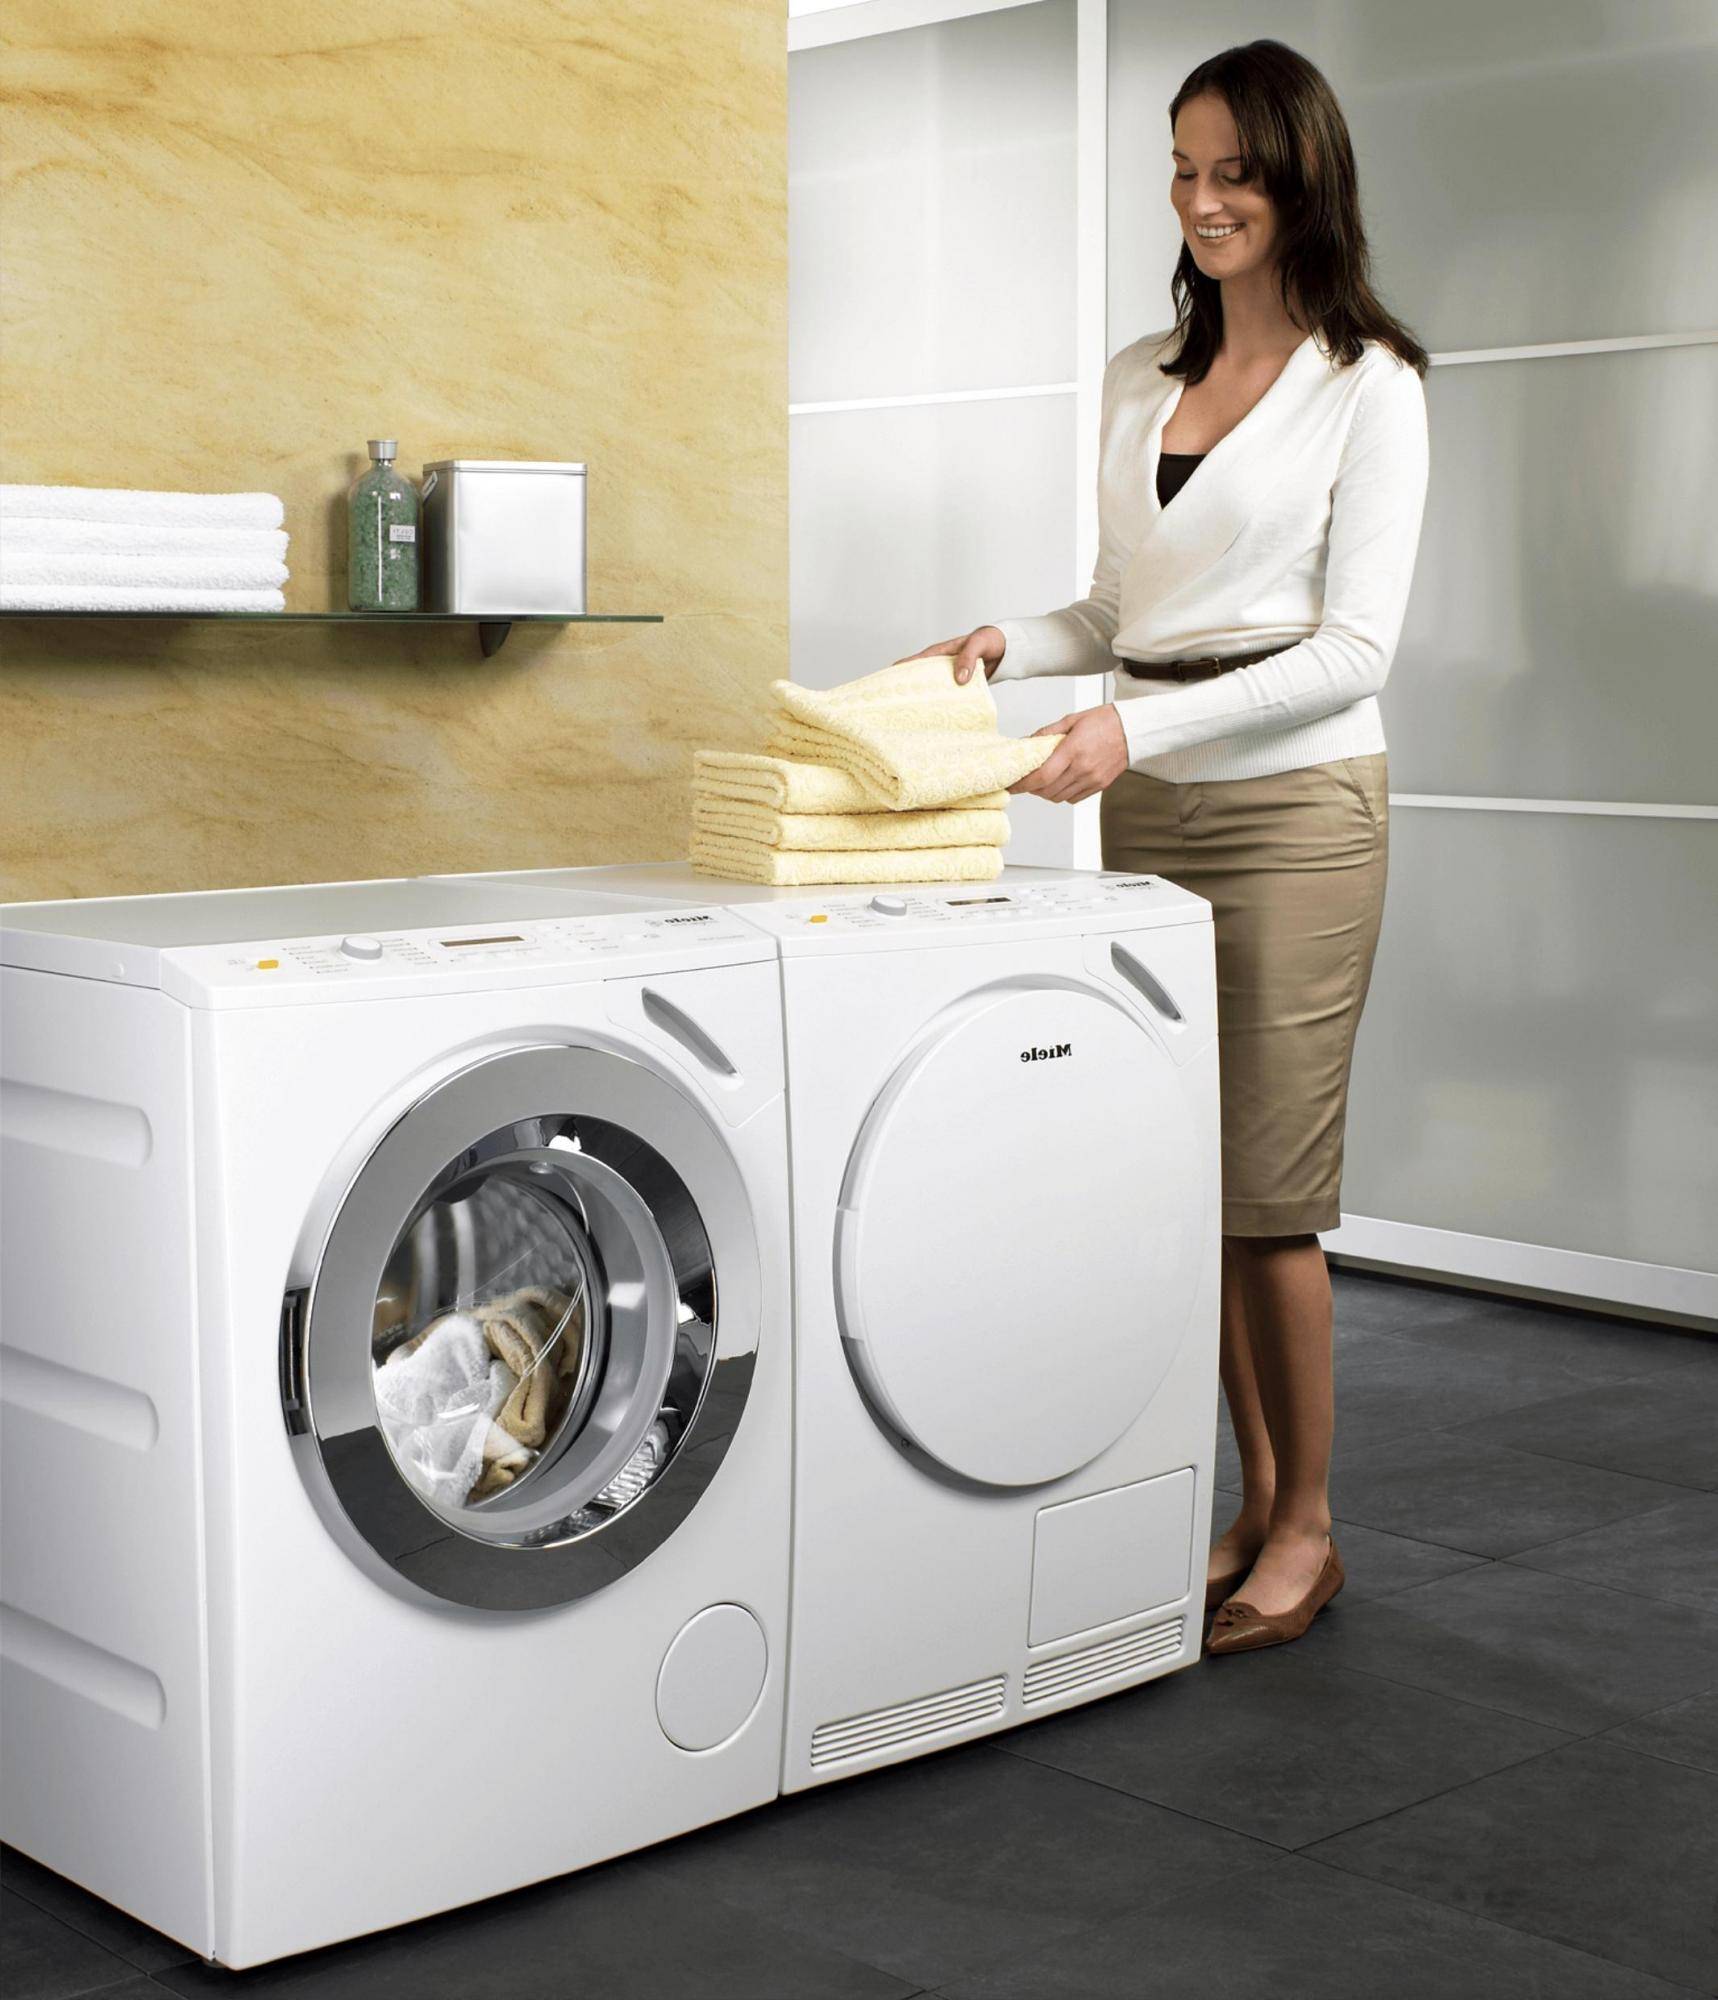 Как выбрать стиральную машину? какой фирмы выбрать стиральную машину? :: businessman.ru